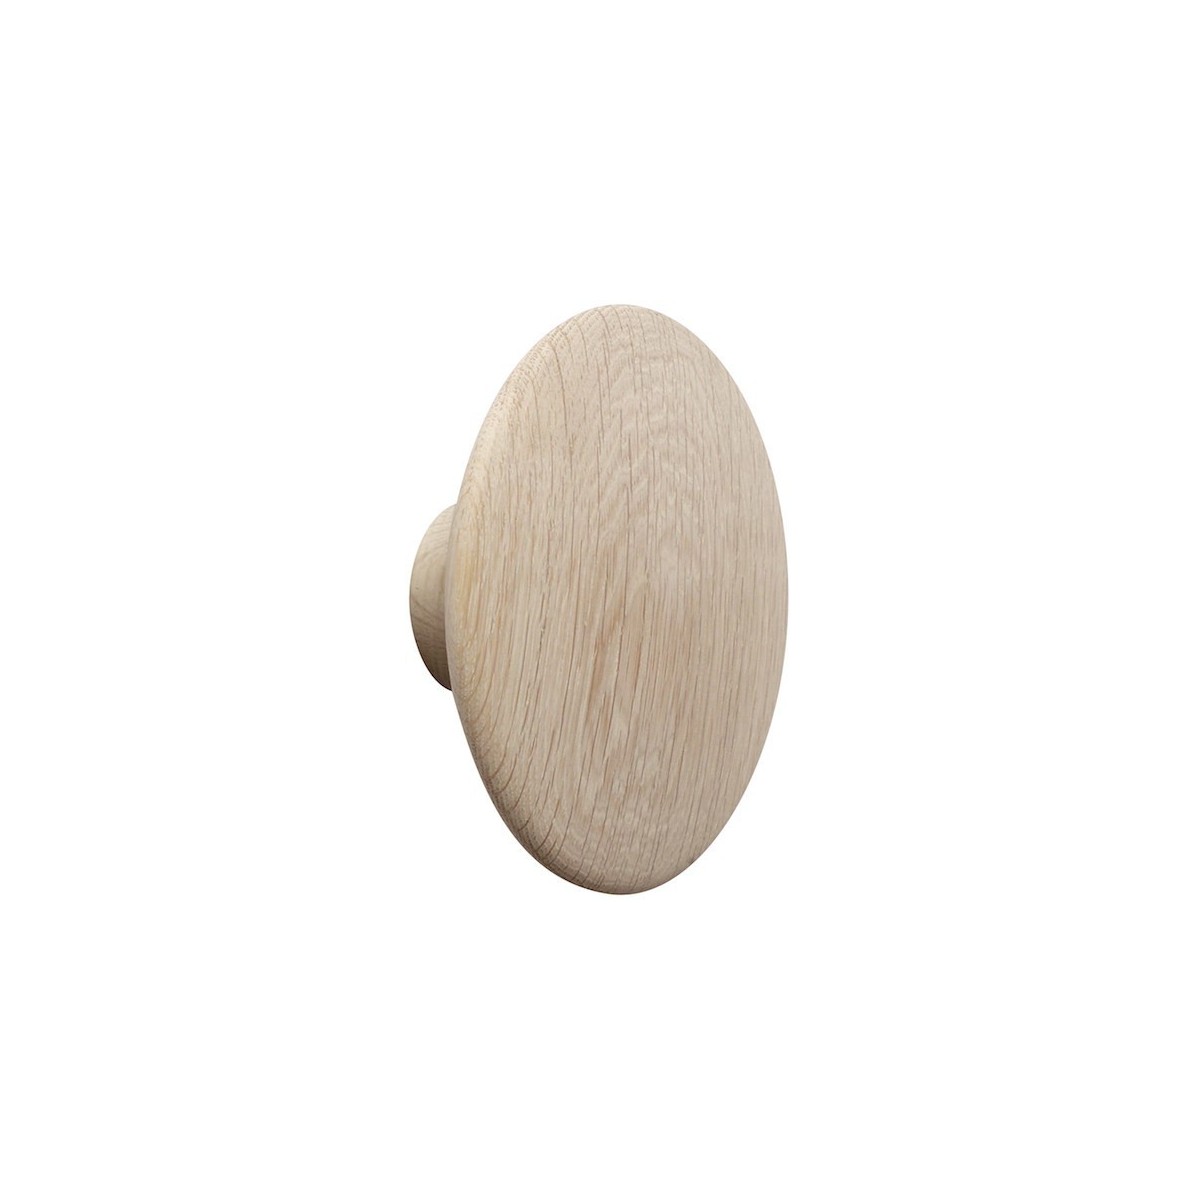 Ø9 cm (S) - oak - The Dots wood